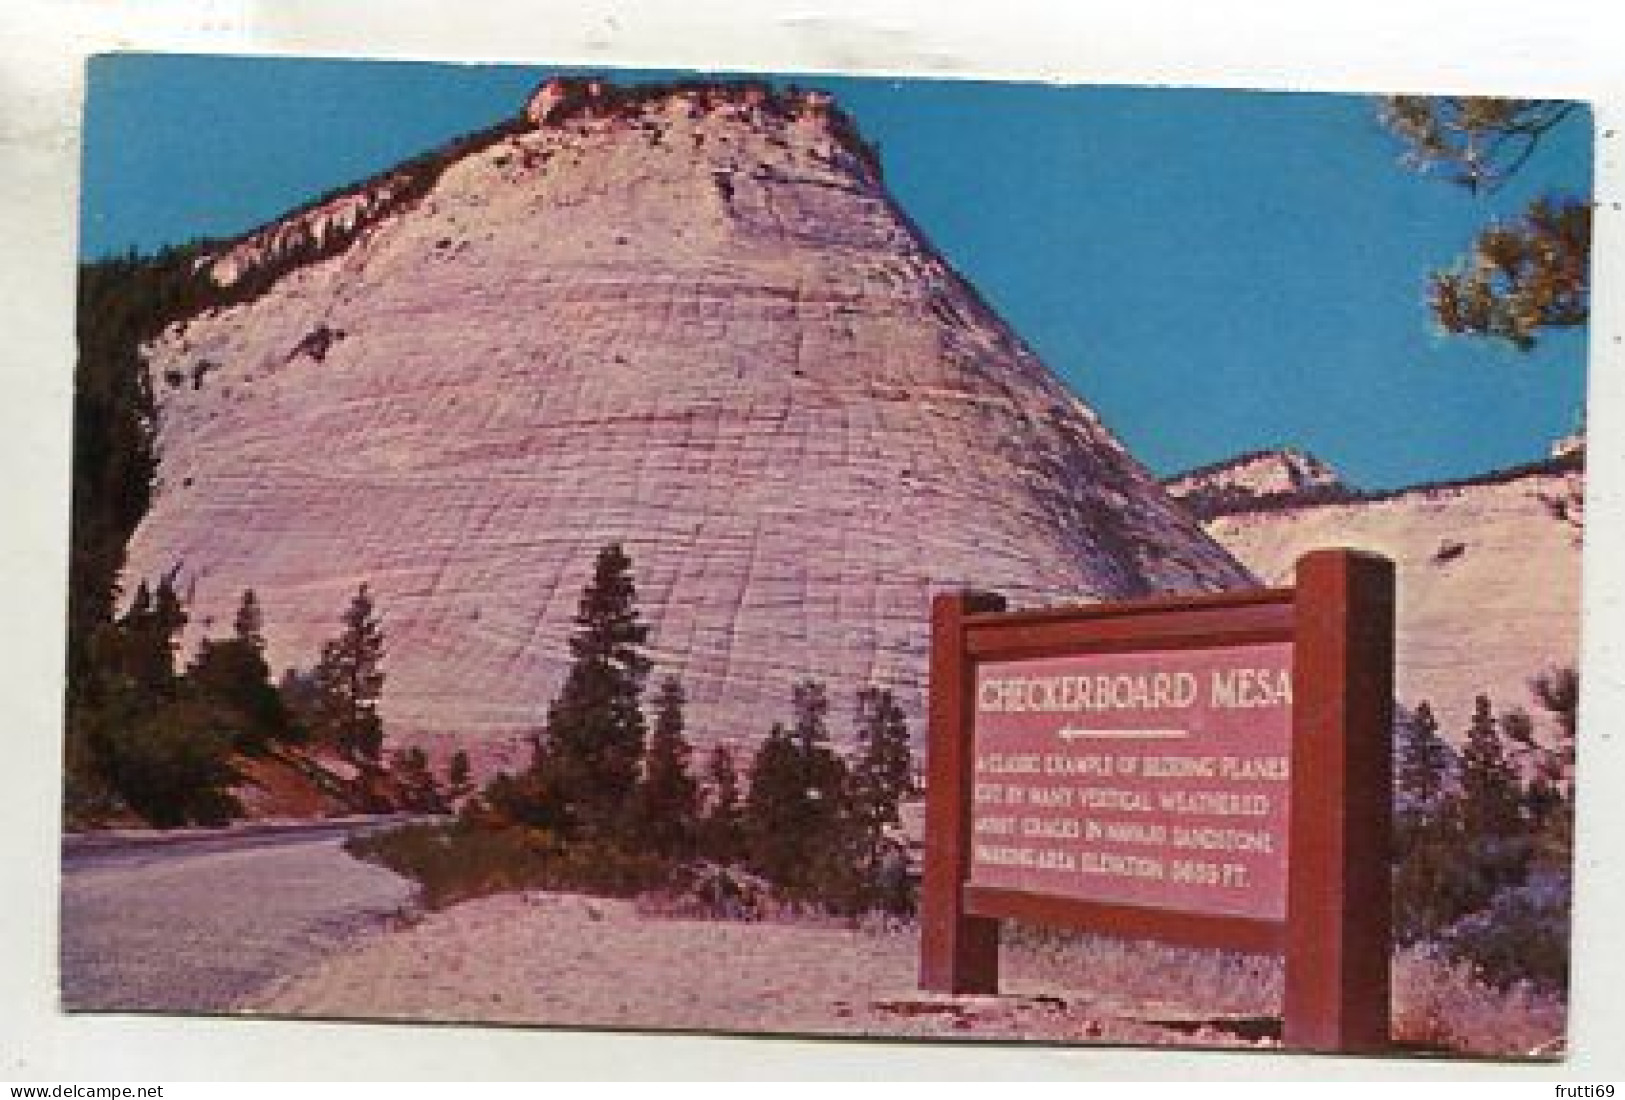 AK 135573 USA - Utah - Zion National Park - Checkerboard Mesa - Zion